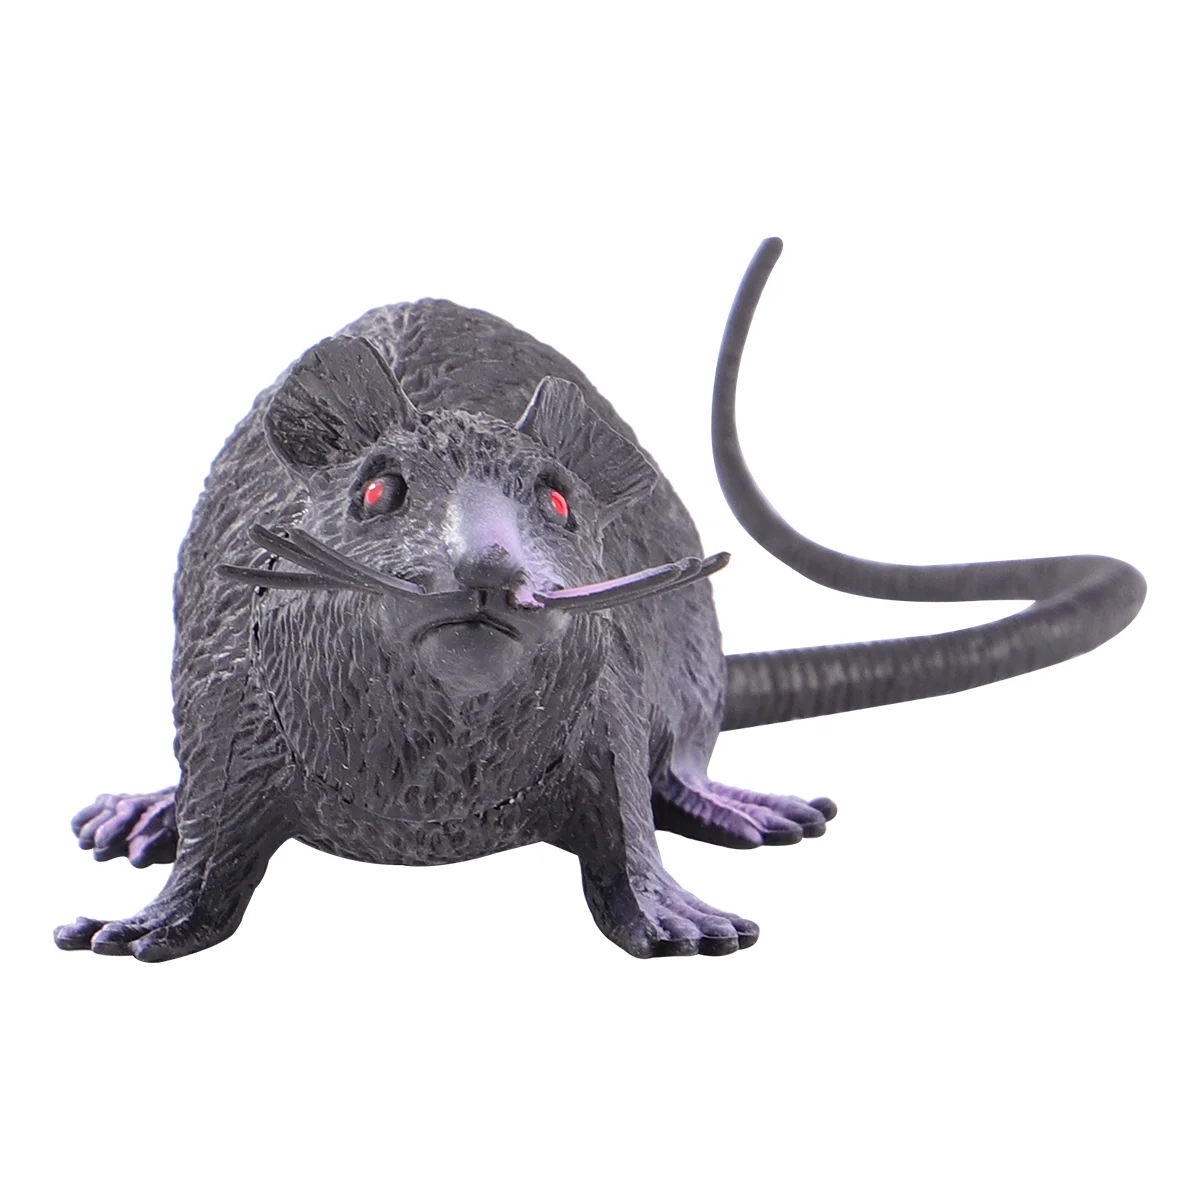 6 крыс, пластиковые игрушки, Реалистичная черная крыса с красными глазами  для декора или шуток | AliExpress